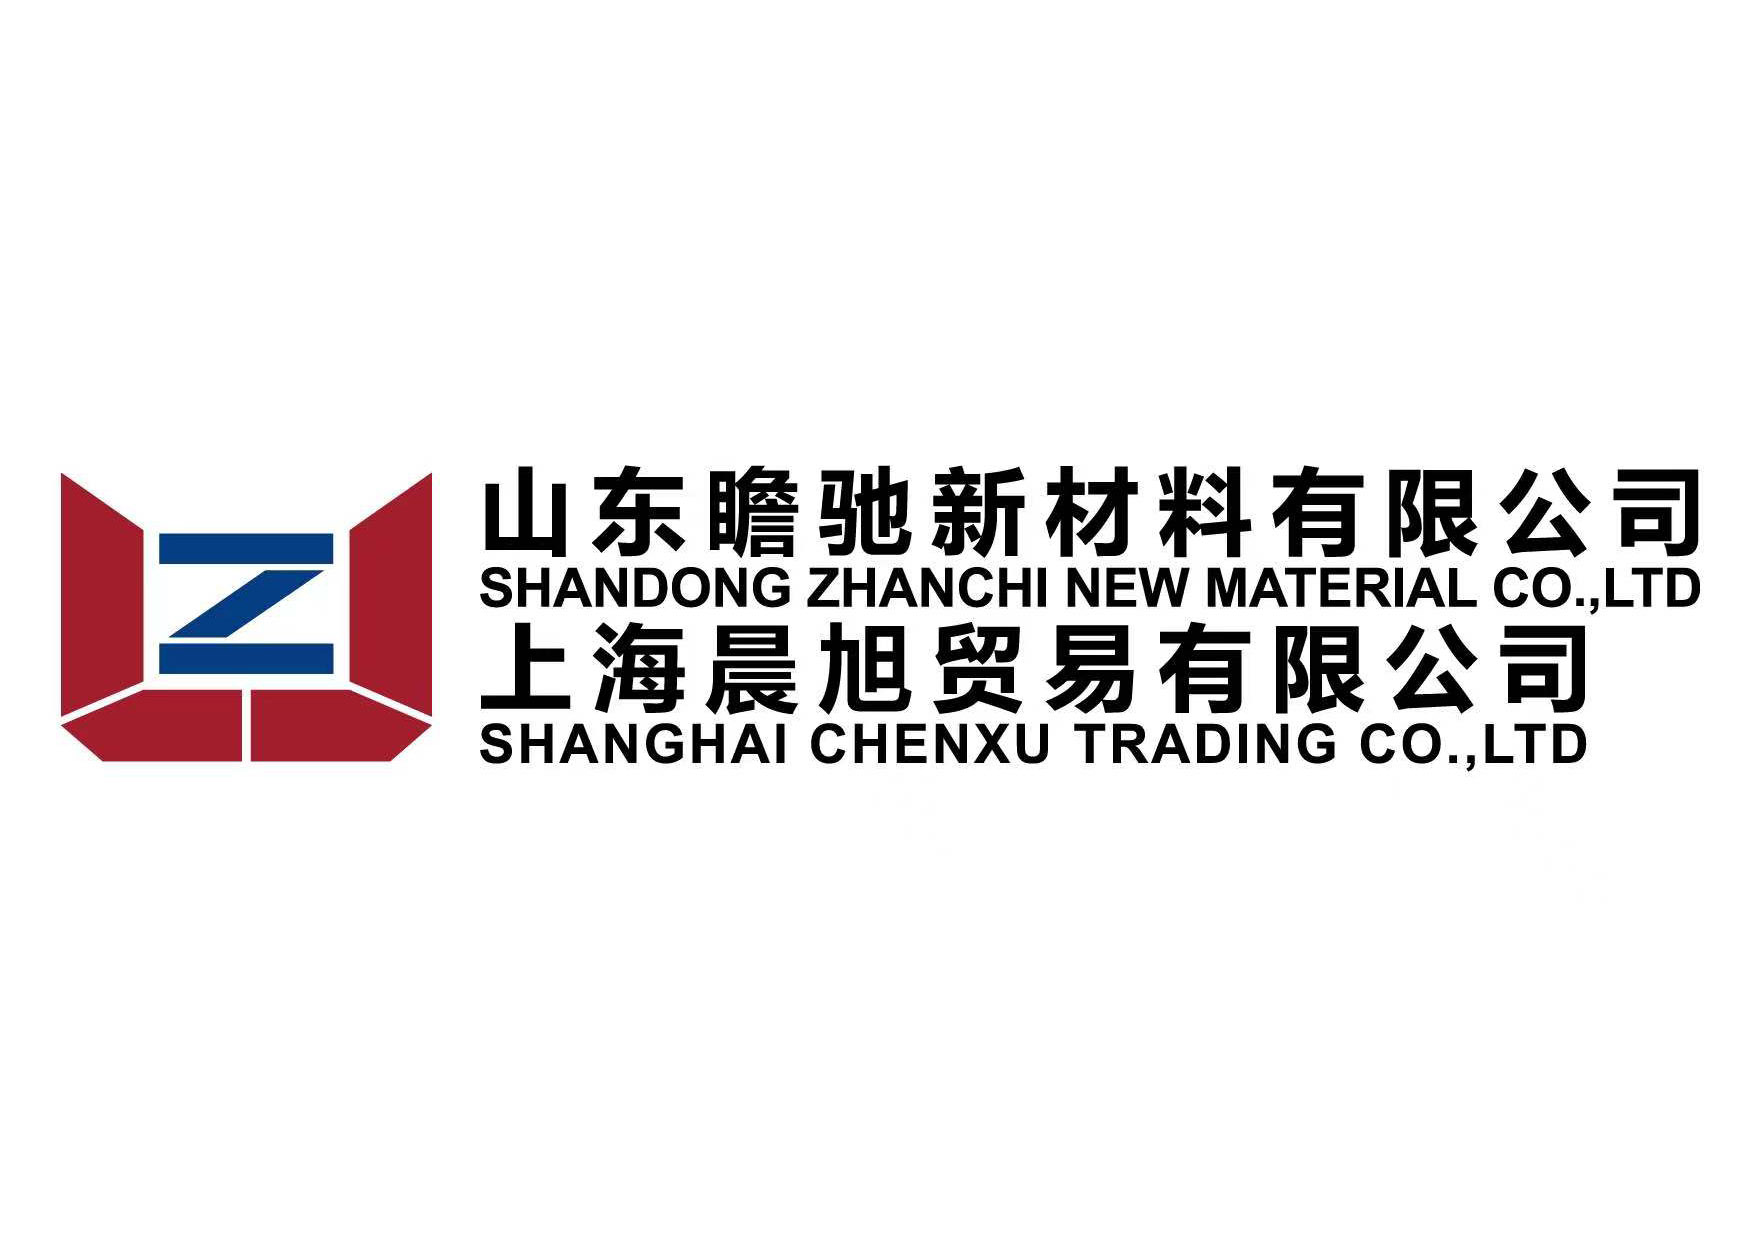 Shanghai Chenxu Trading ကုမ္ပဏီကို တည်ထောင်ခဲ့သည်။